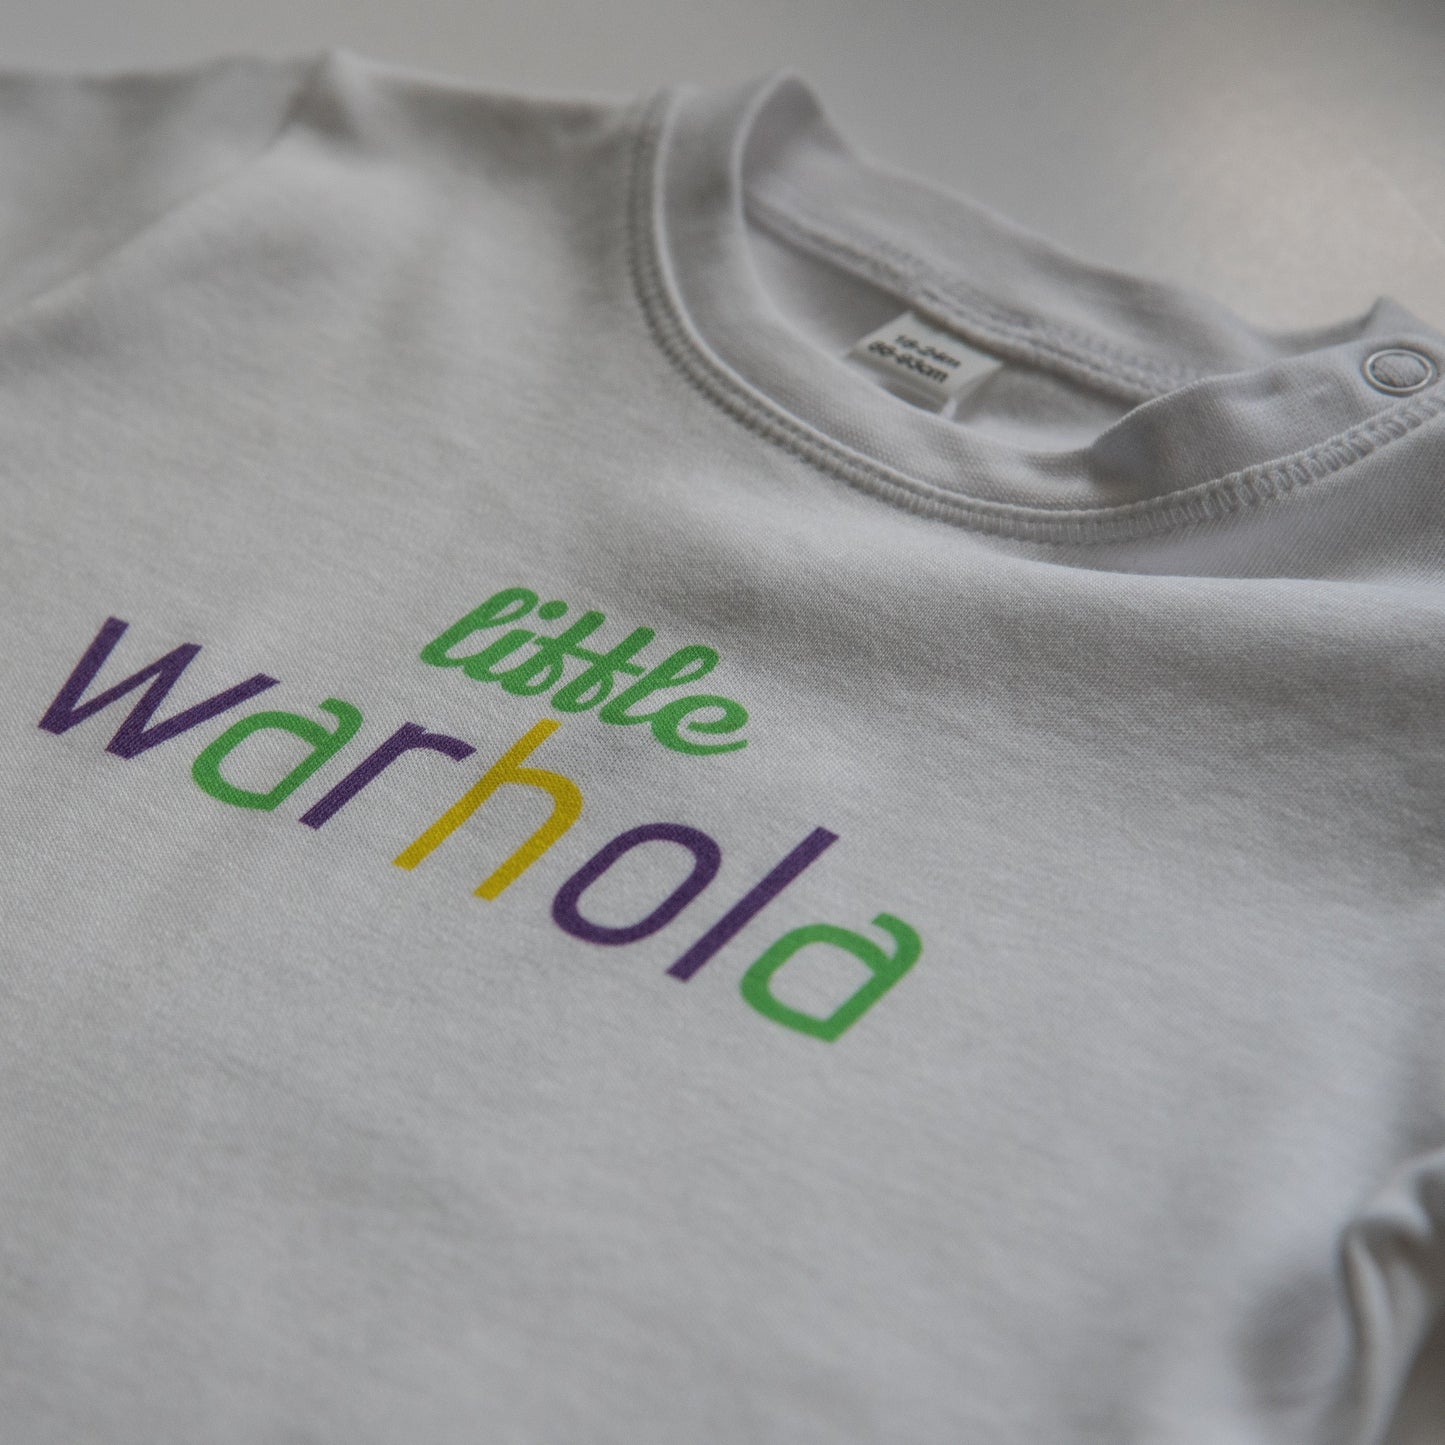 LITTLE WARHOLA GREEN - Short Sleeve Toddler Tee - Little Mate Adventures 